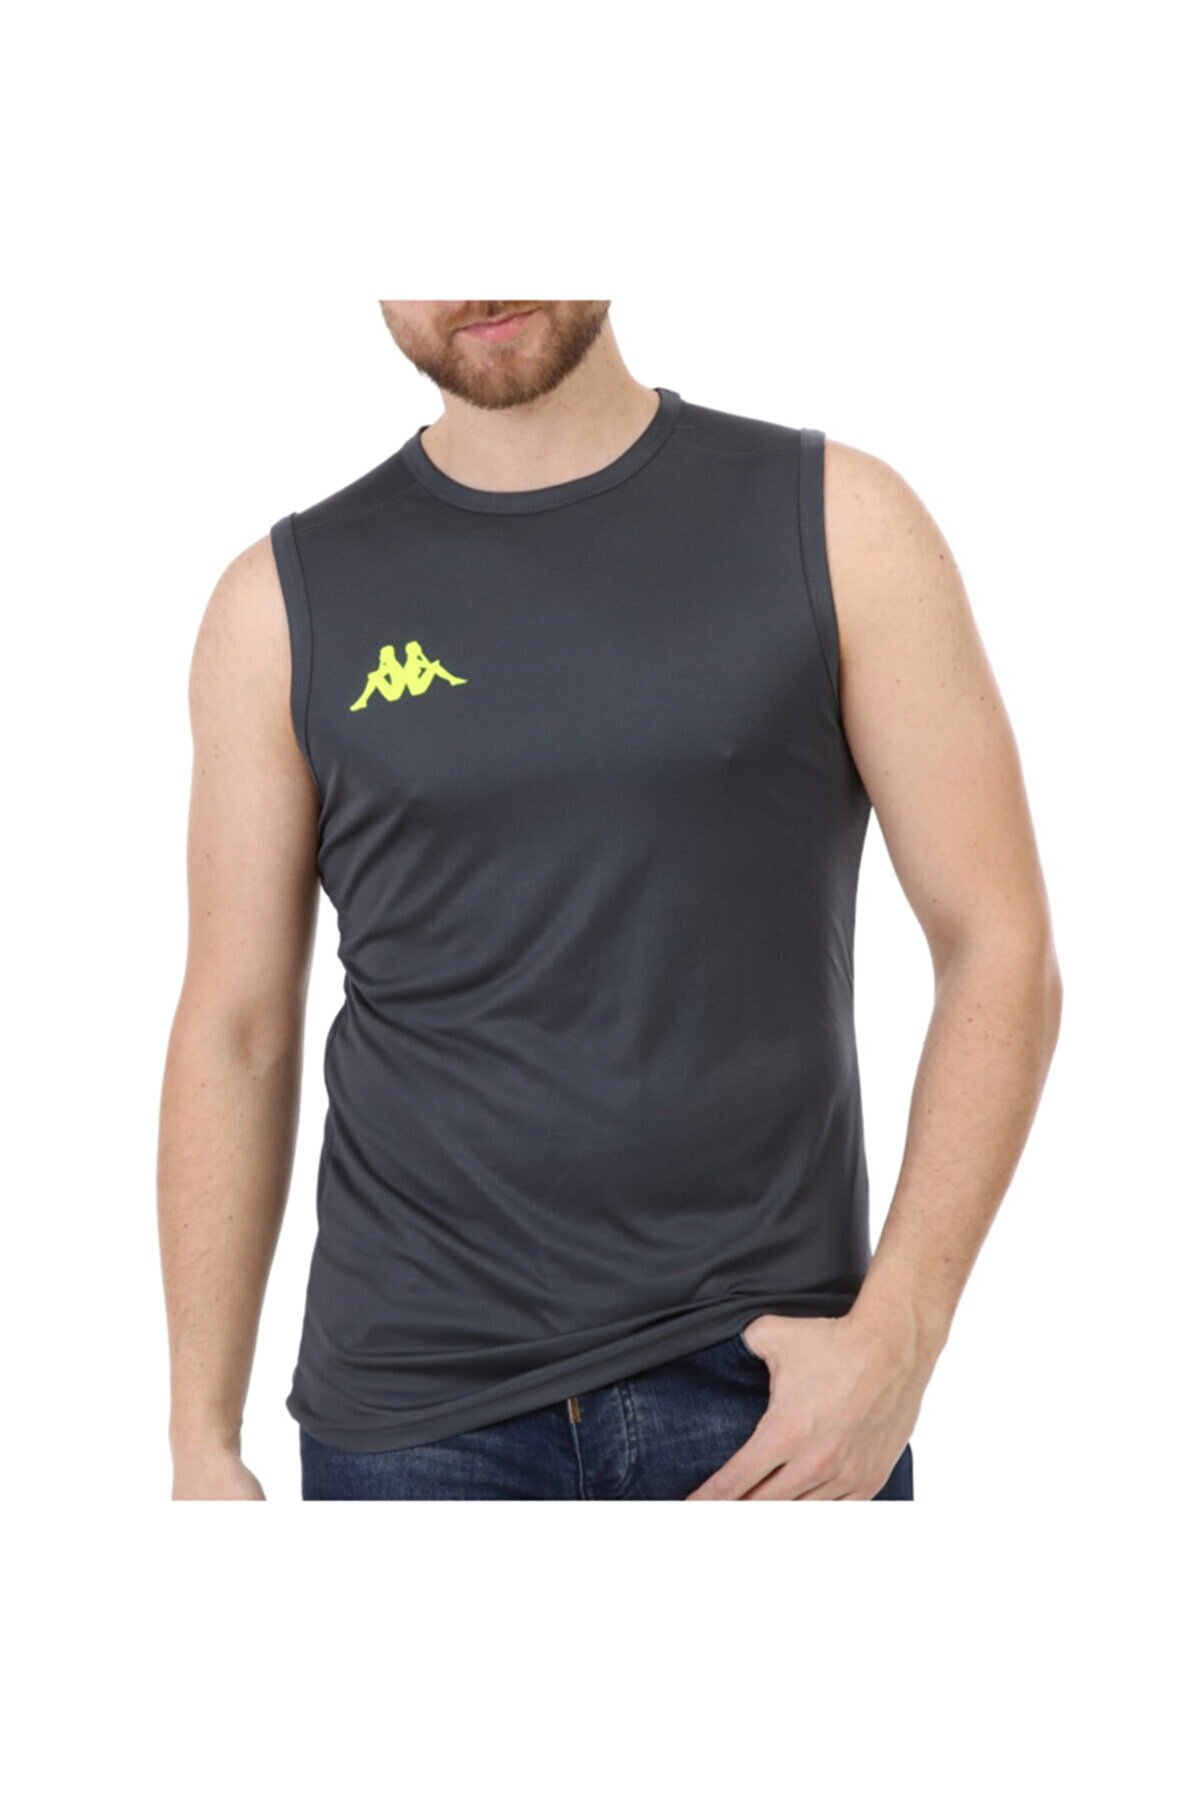 Kappa Erkek Gri Kolsuz  Spor T-Shirt